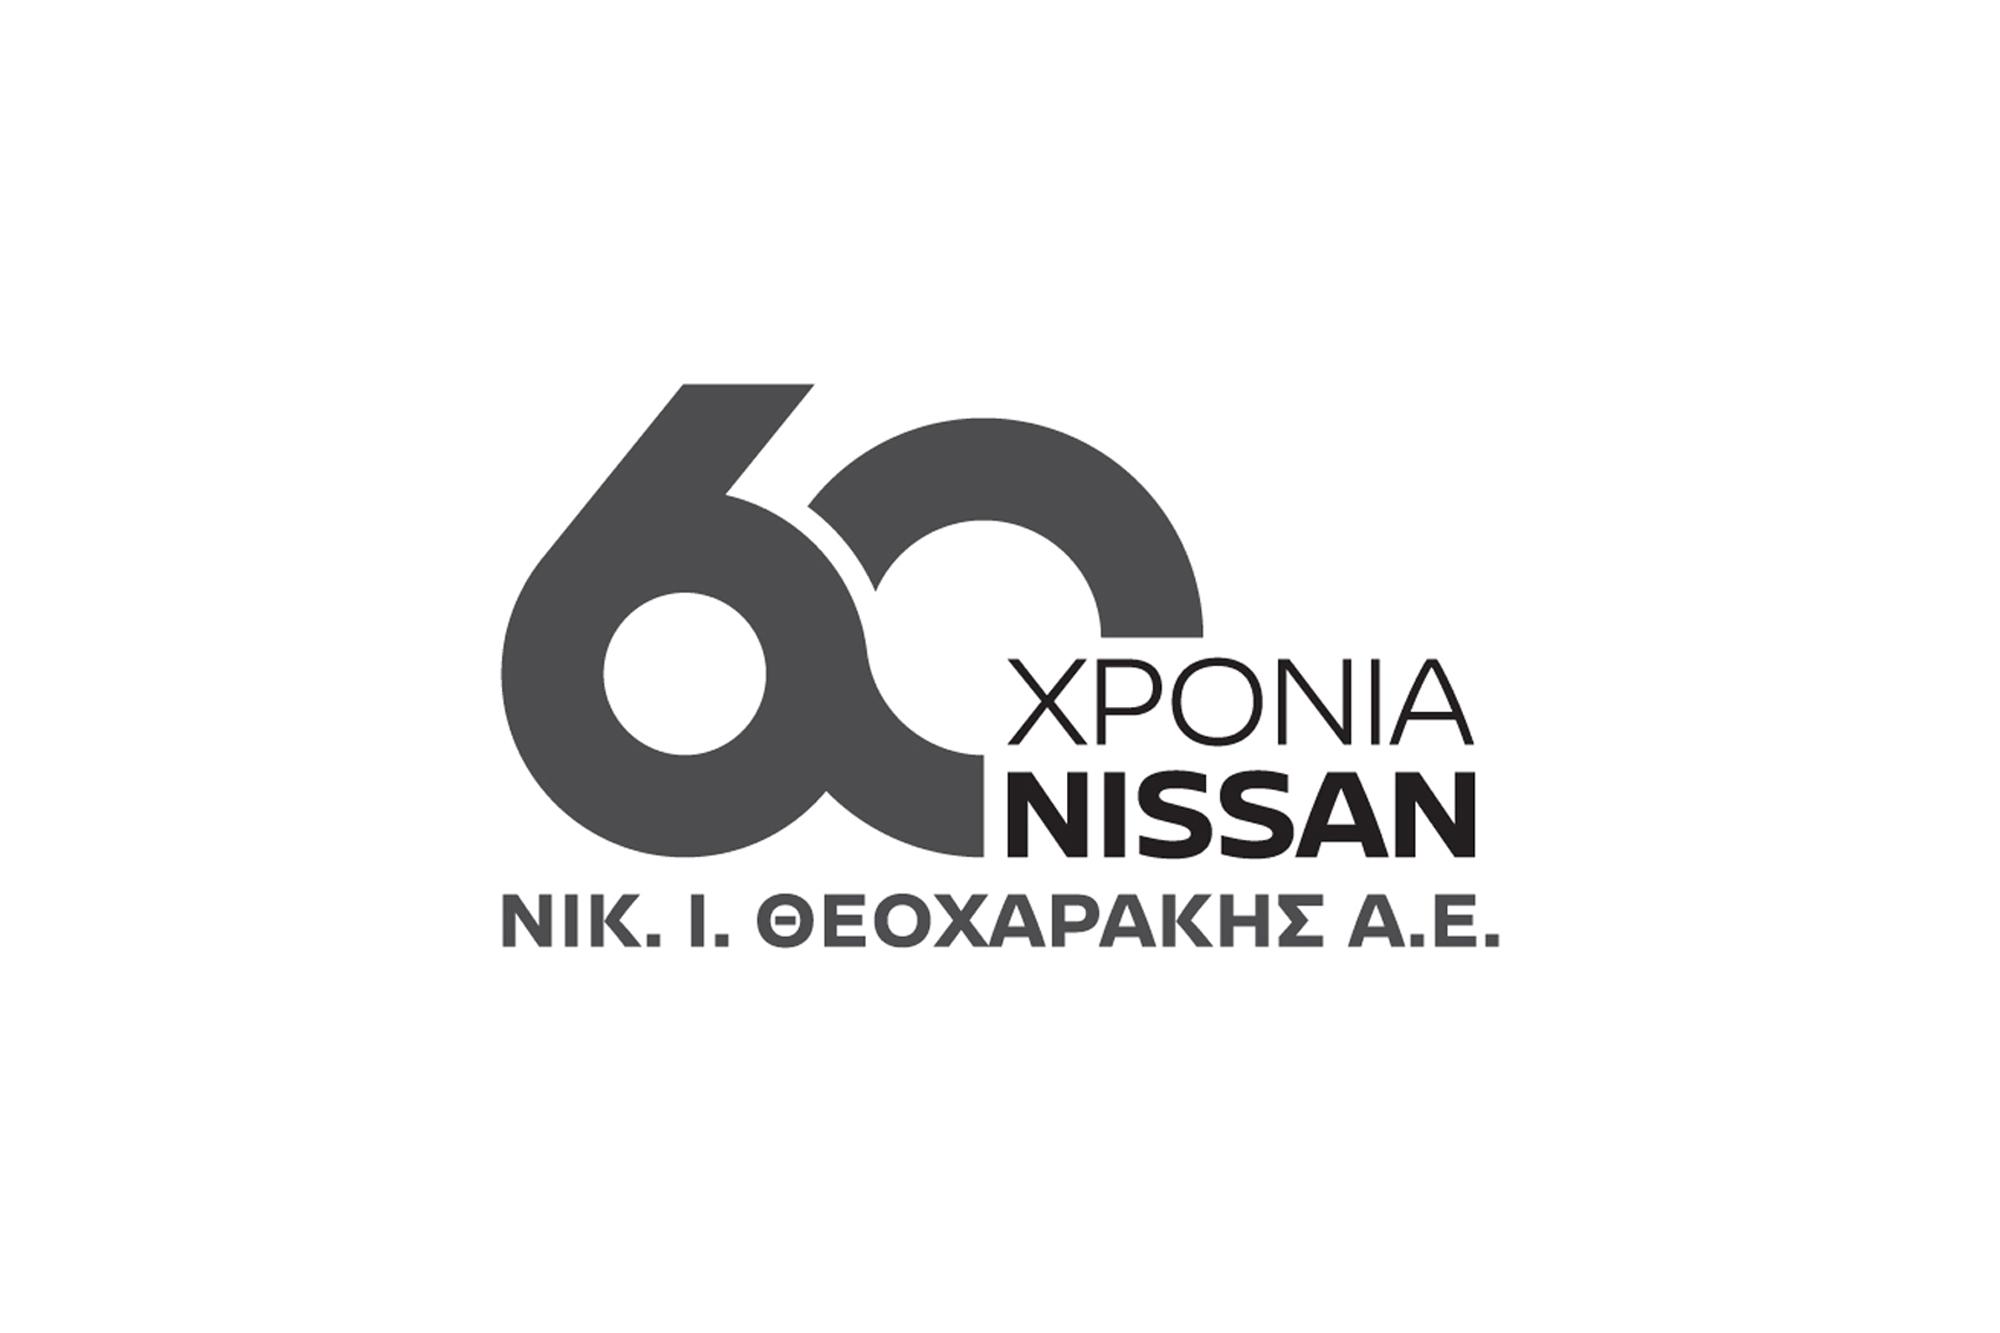 60 χρόνια συνεργασίας της ΝΙΚ. Ι. ΘΕΟΧΑΡΑΚΗΣ Α.Ε με την Nissan